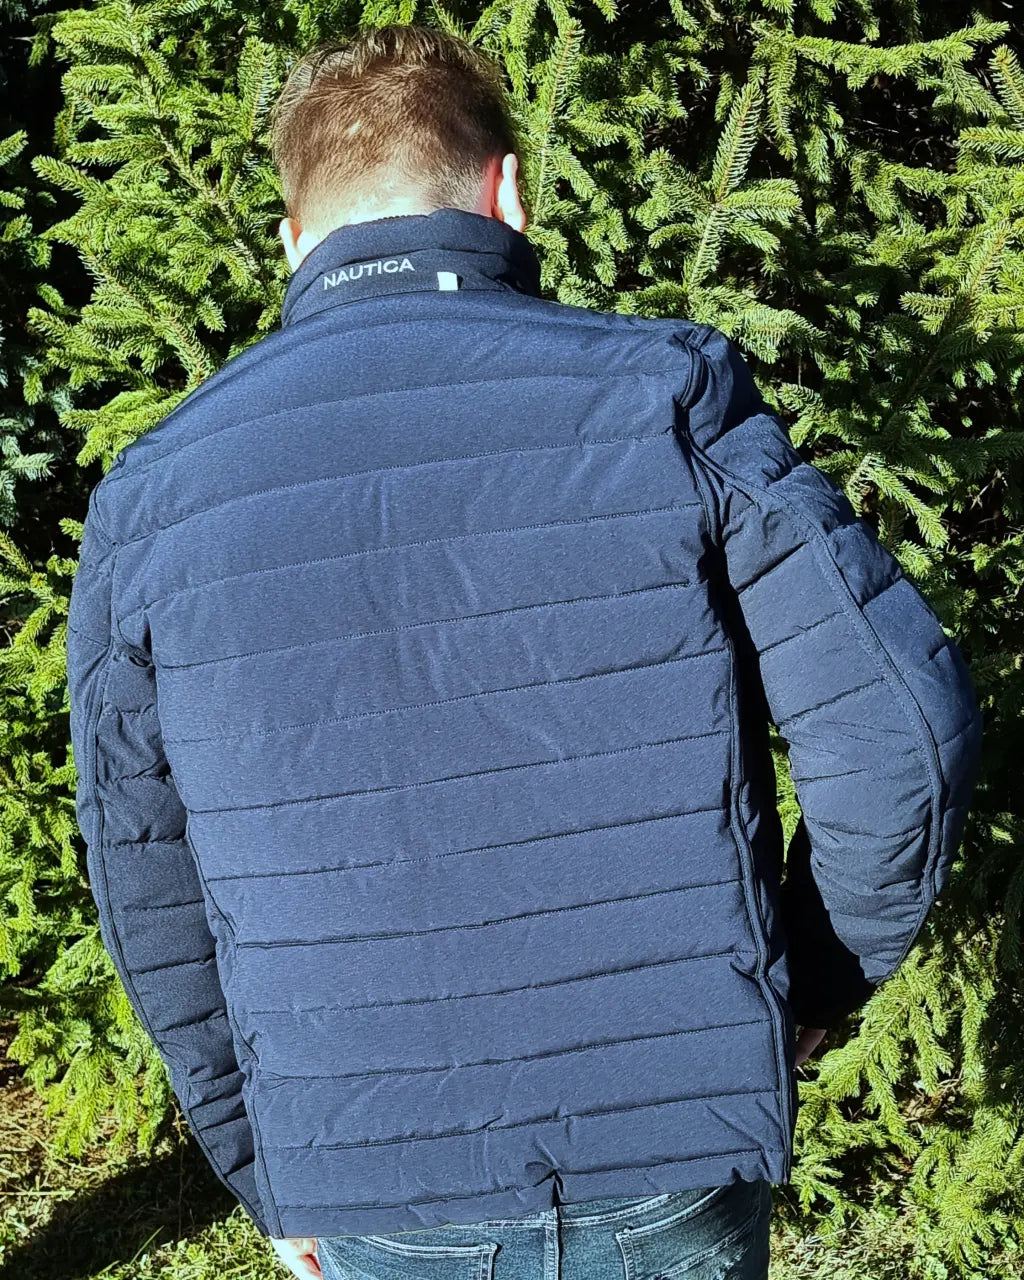 Nautica Men's Reversible Quilted Jacket - Bit of Swank